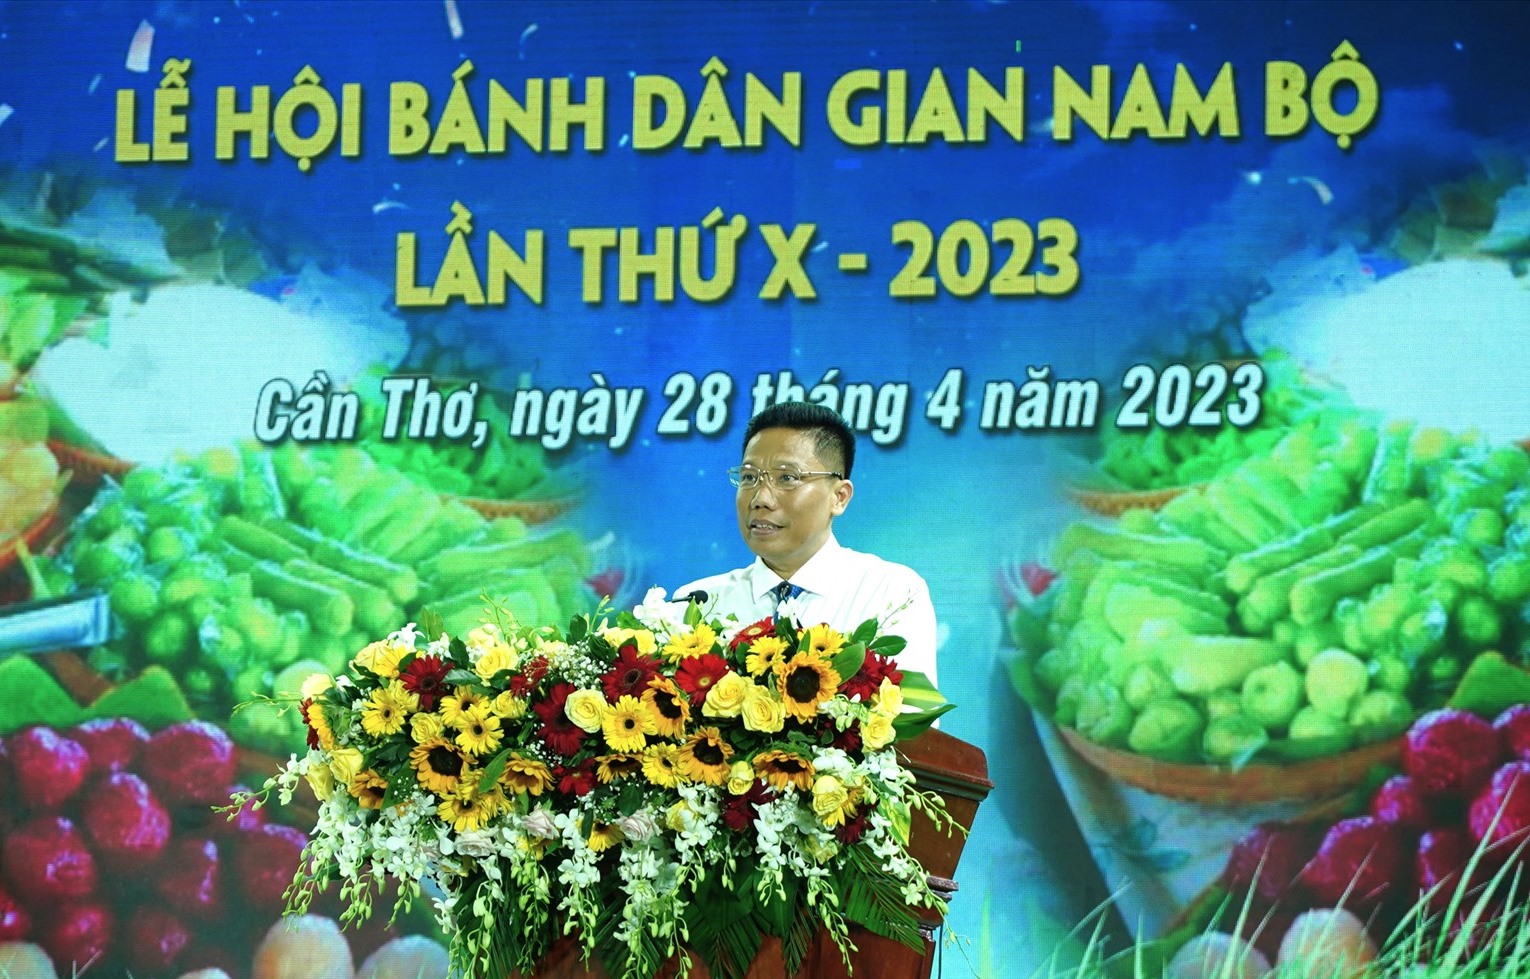 Phó chủ tịch UBND TP. Cần Thơ Nguyễn Thực Hiện phát biểu khai mạc Lễ hội